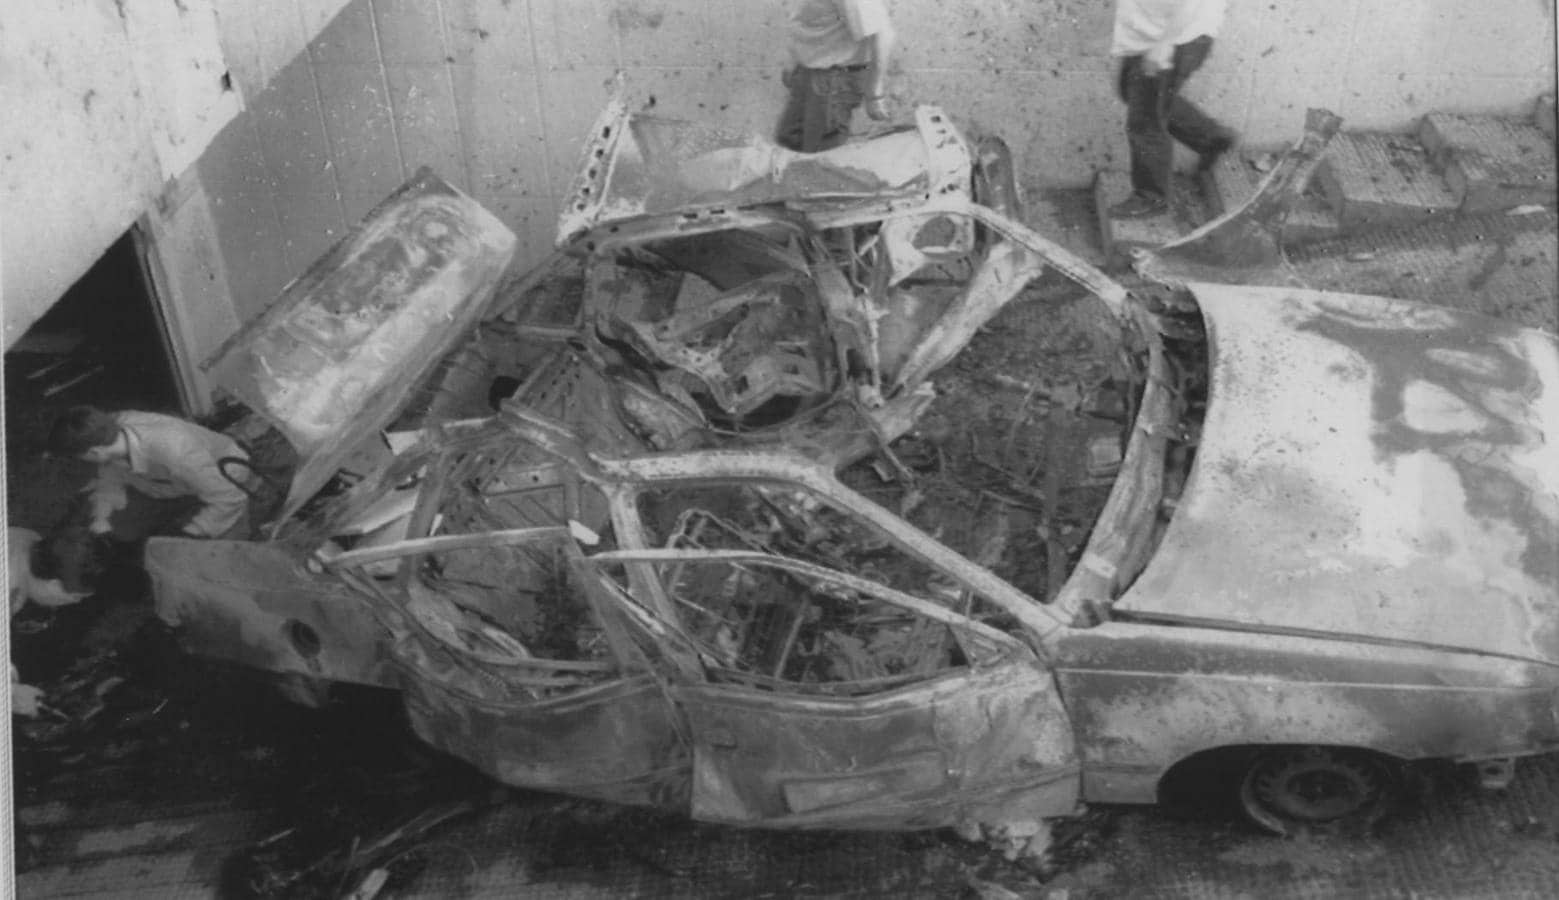 2 de septiembre de 1992. Antonio Heredero Gil, coronel del Ejército de Tierra de 55 años, es asesinado con una bomba colocada bajo su coche en el centro de Salamanca.